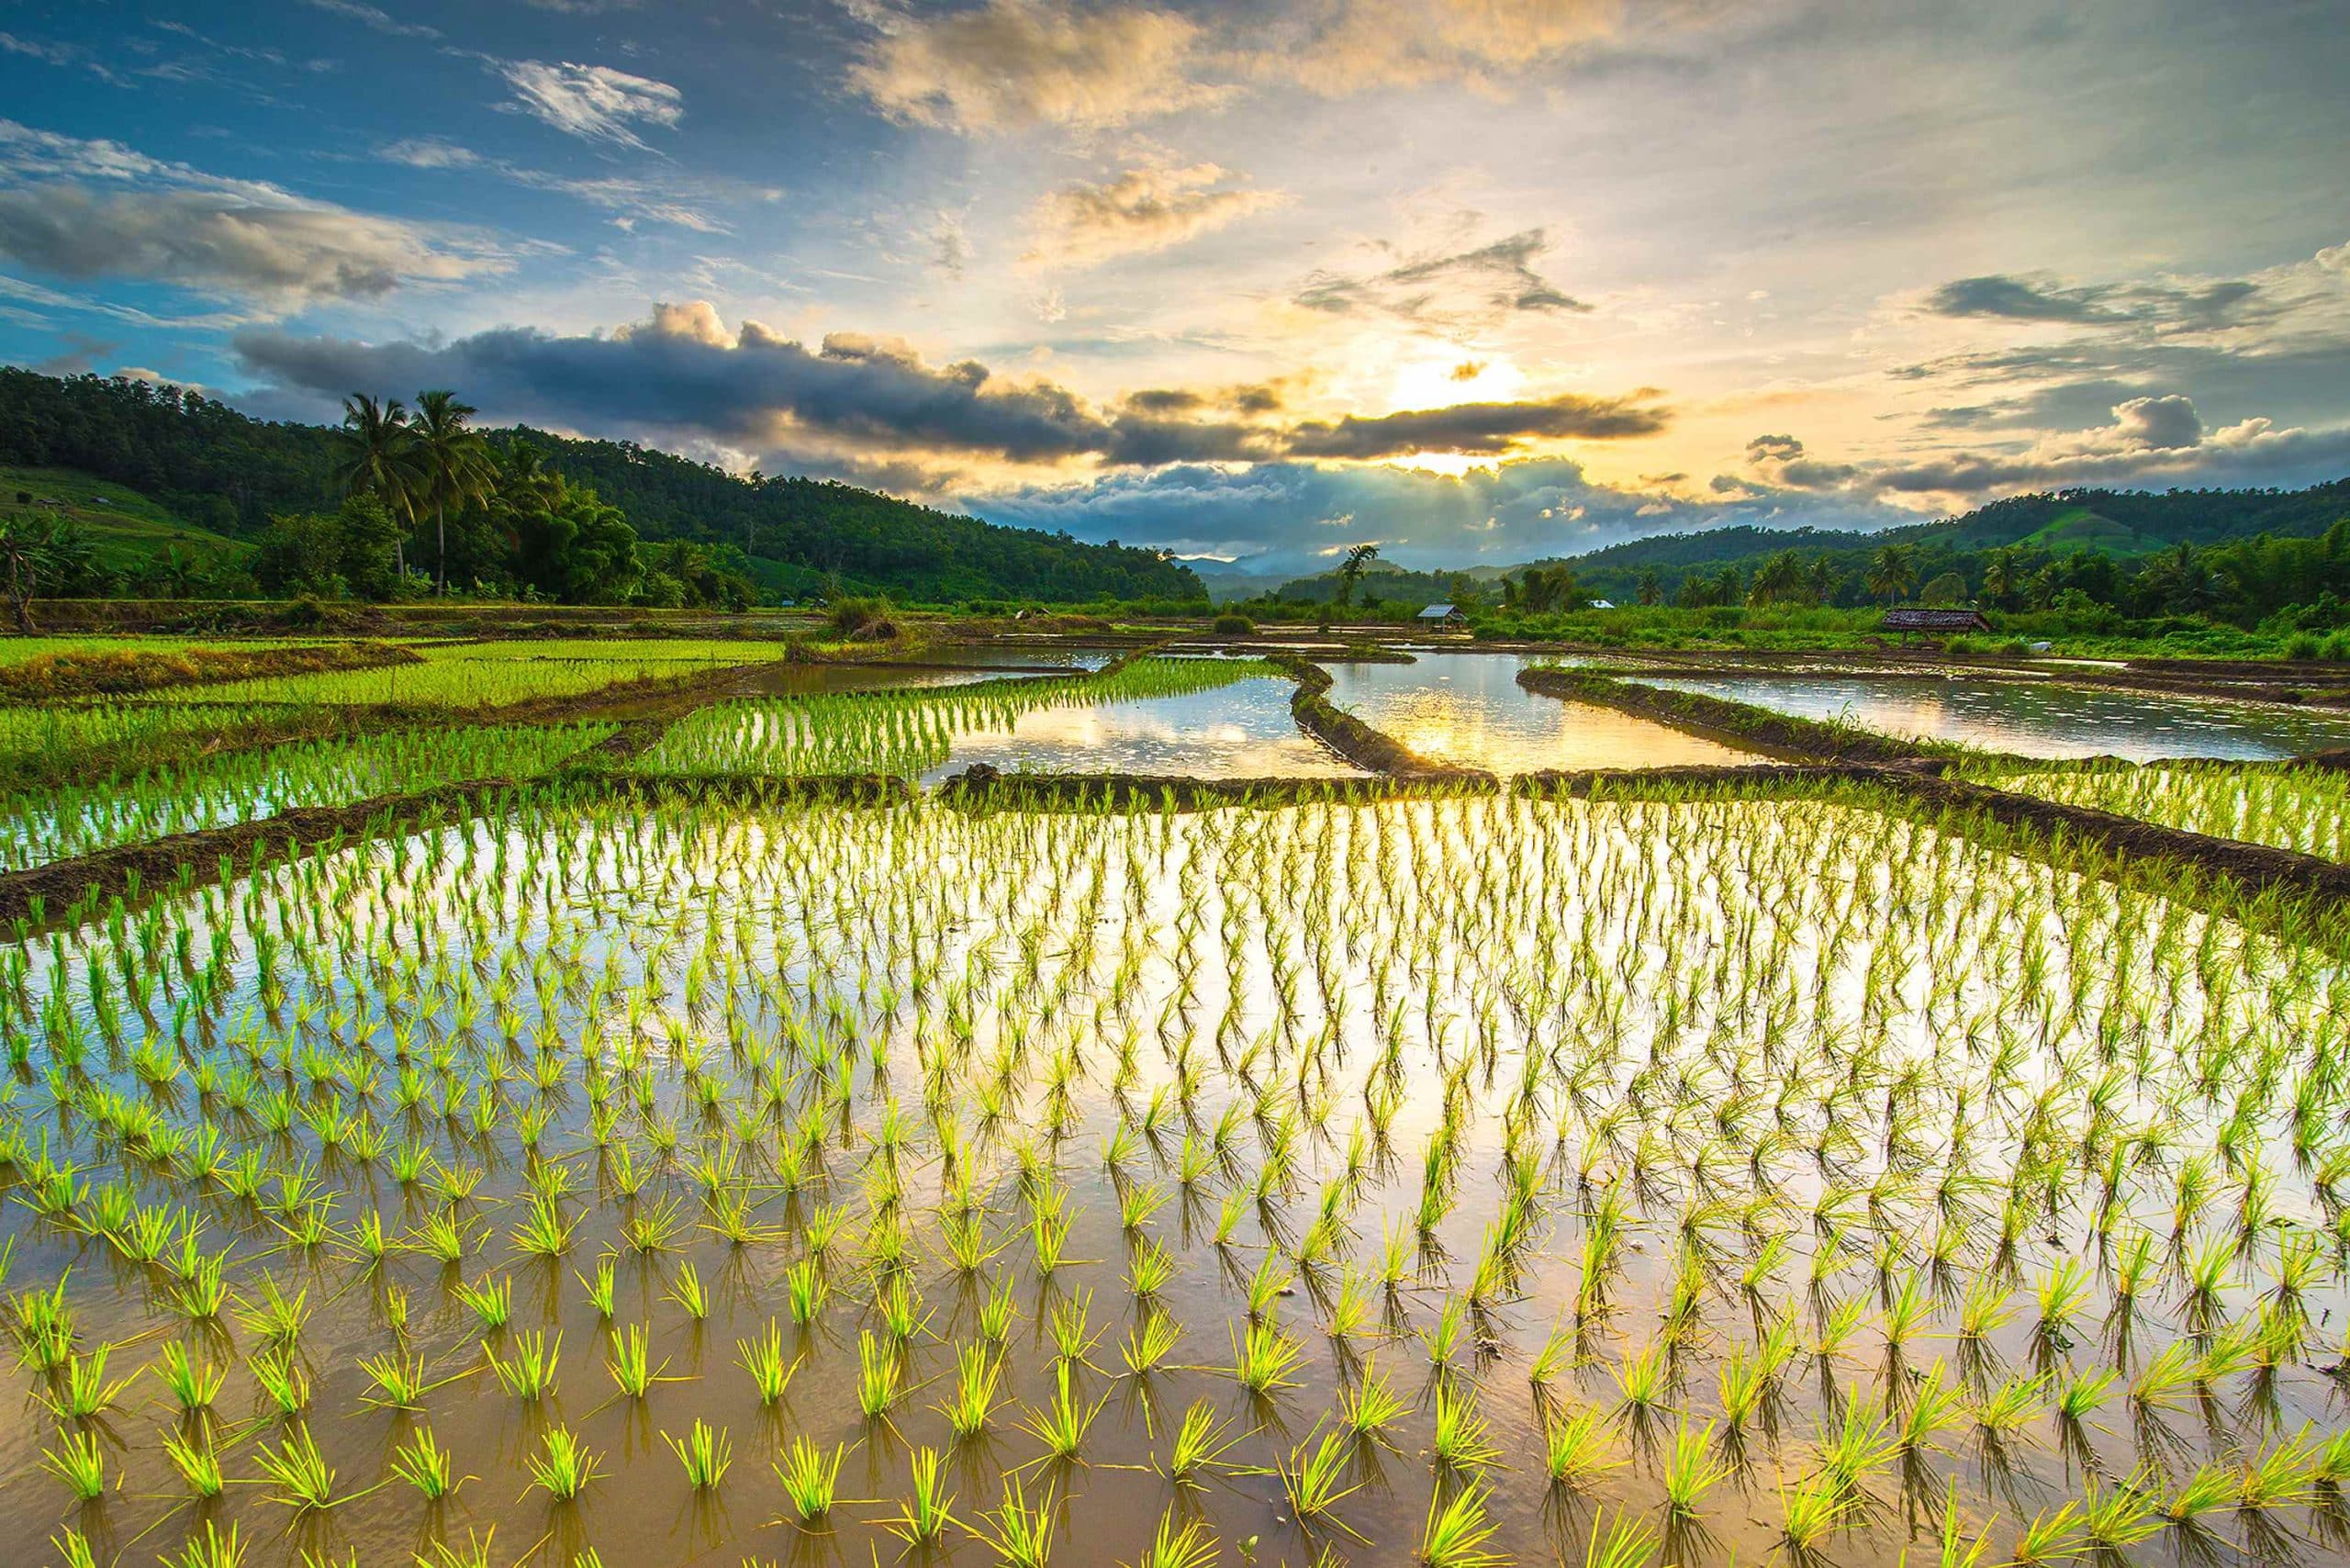 riisispelto japanin aivotulehdus